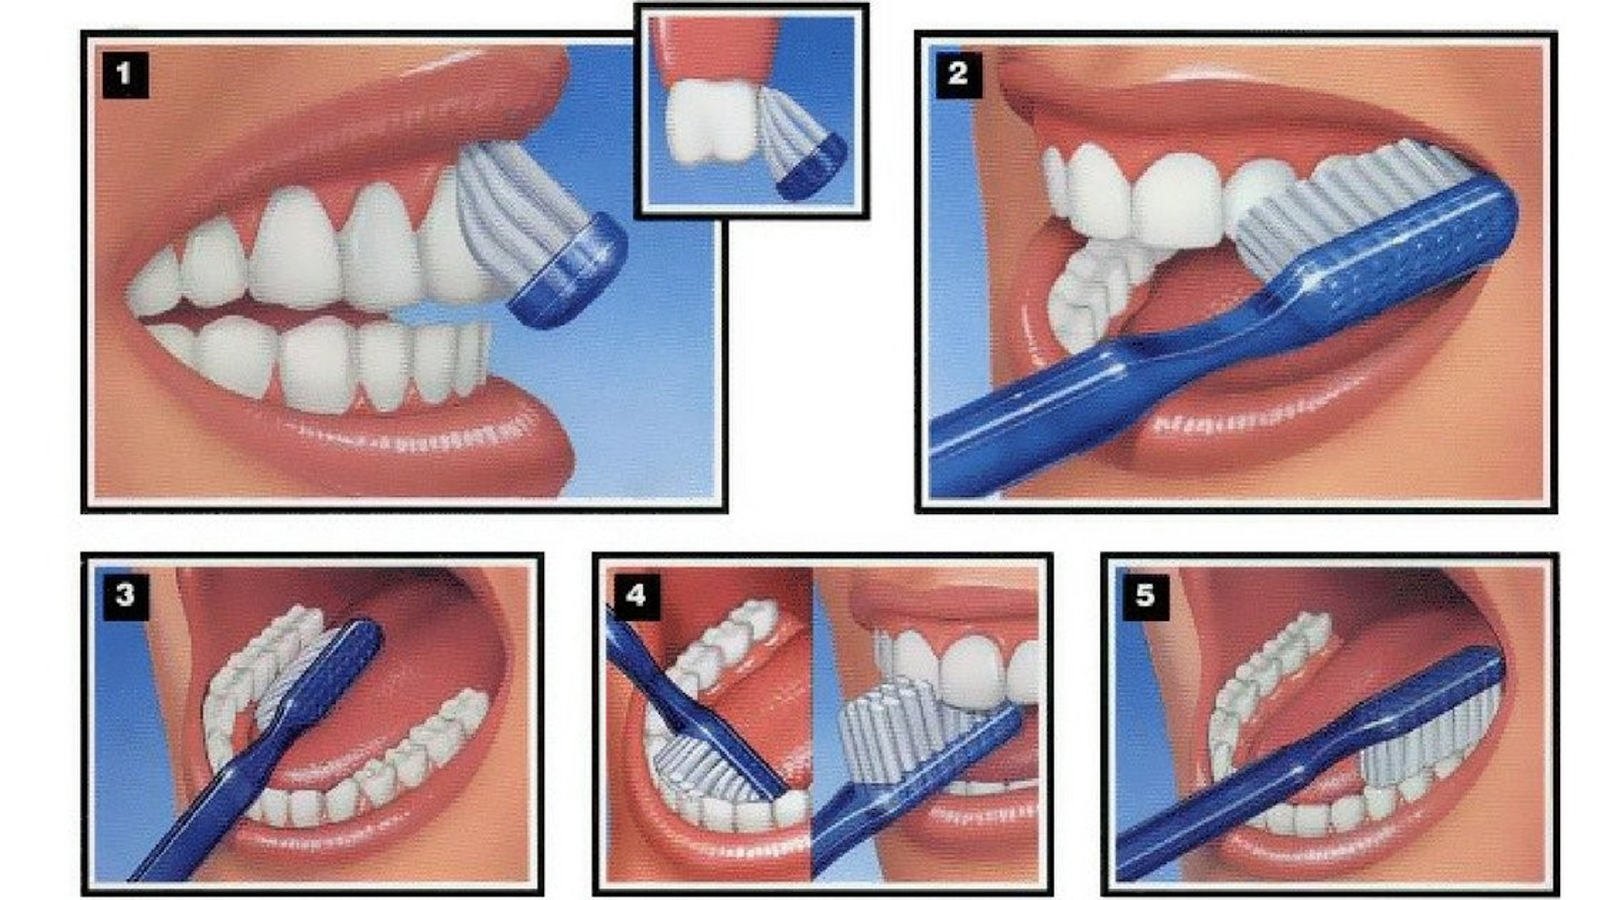 Chải răng đúng cách giúp cải thiện viêm lợi có mủ